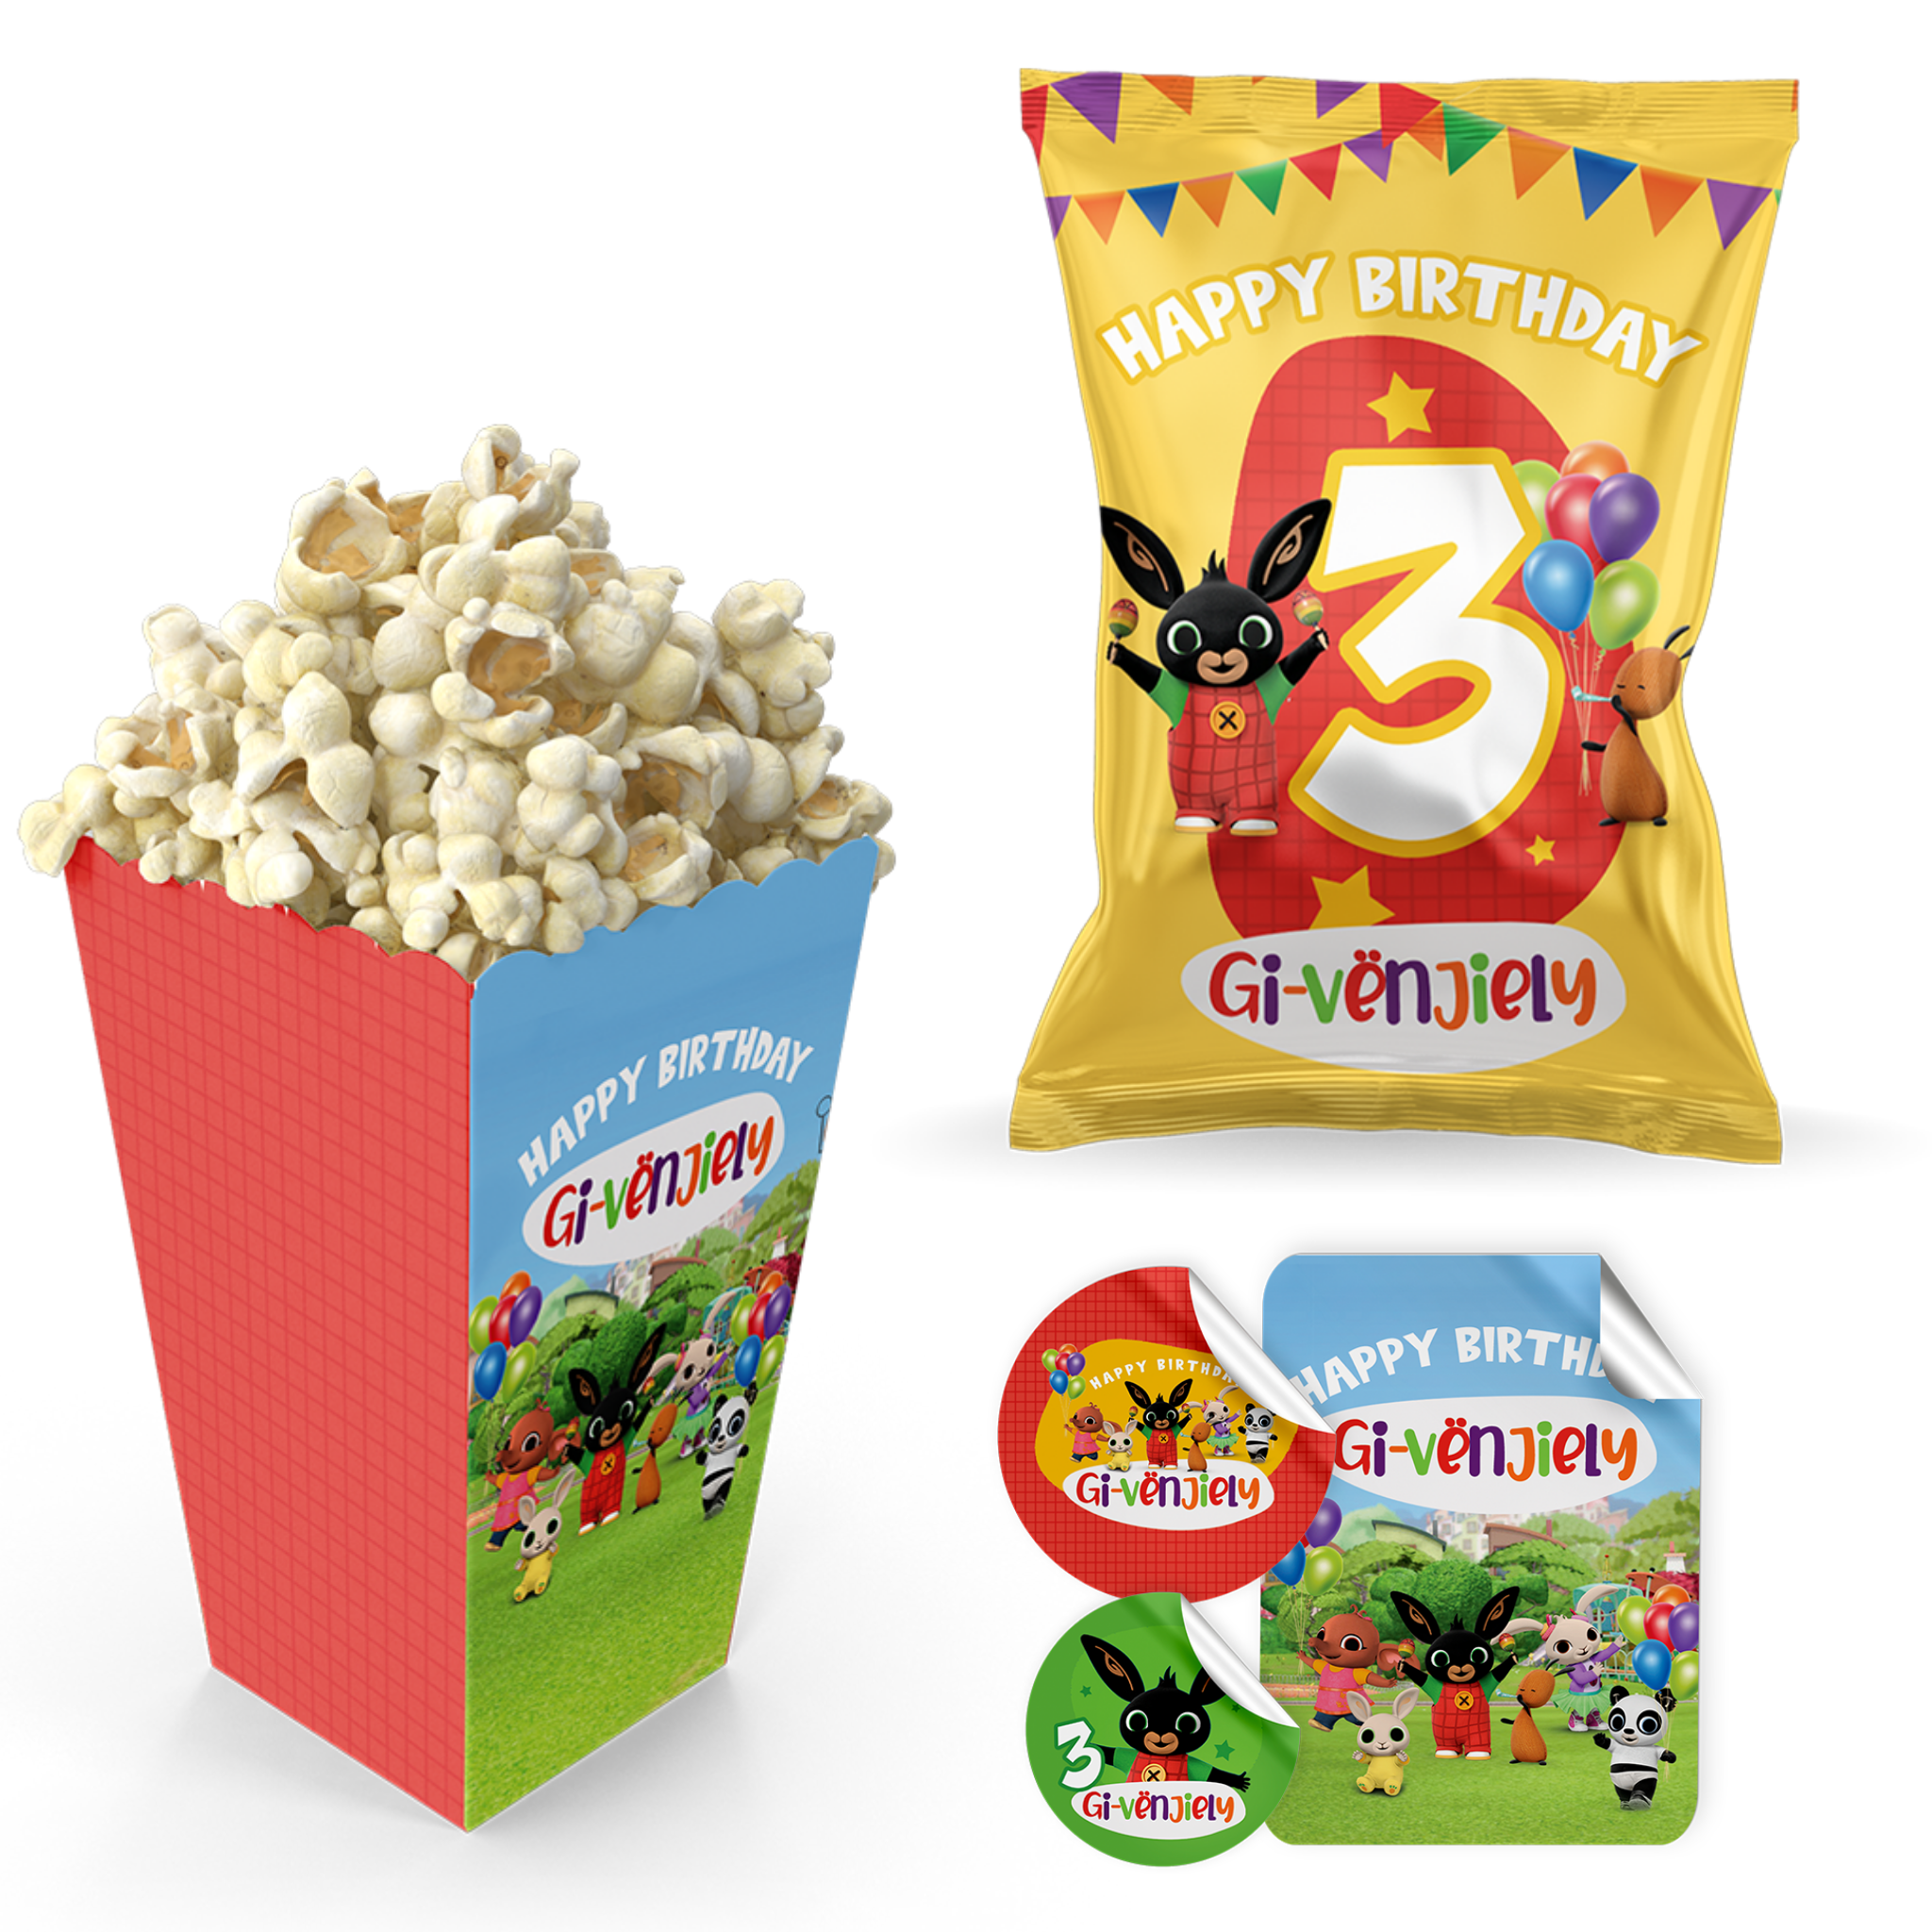 Bing popcornbak, chips en stickers